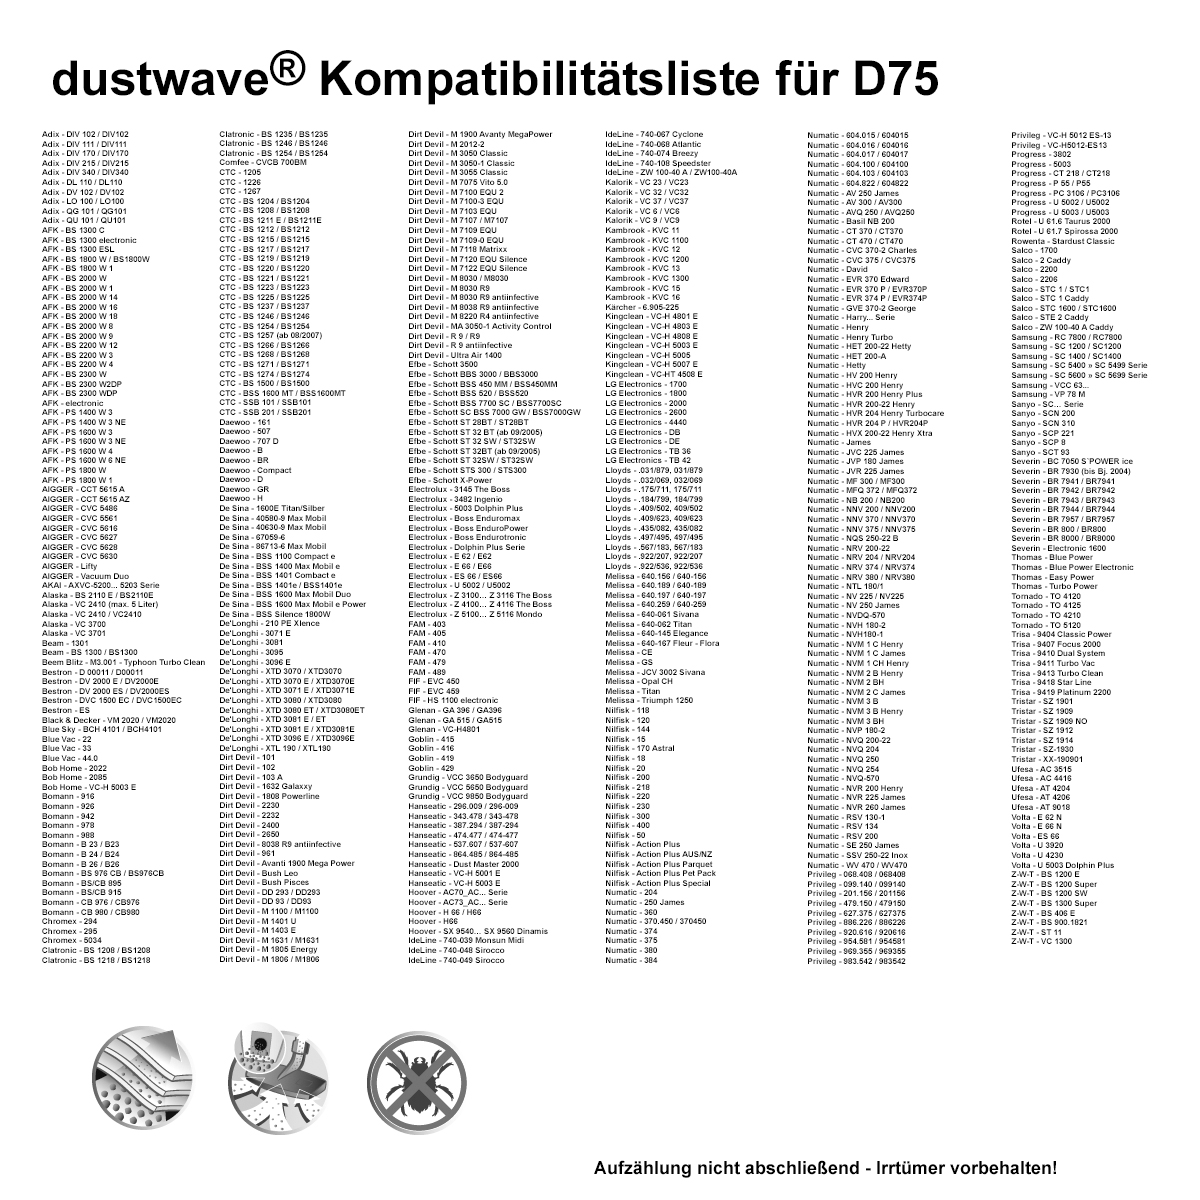 Dustwave® 20 Staubsaugerbeutel für AFK BS 1800 W 1 - hocheffizient, mehrlagiges Mikrovlies mit Hygieneverschluss - Made in Germany